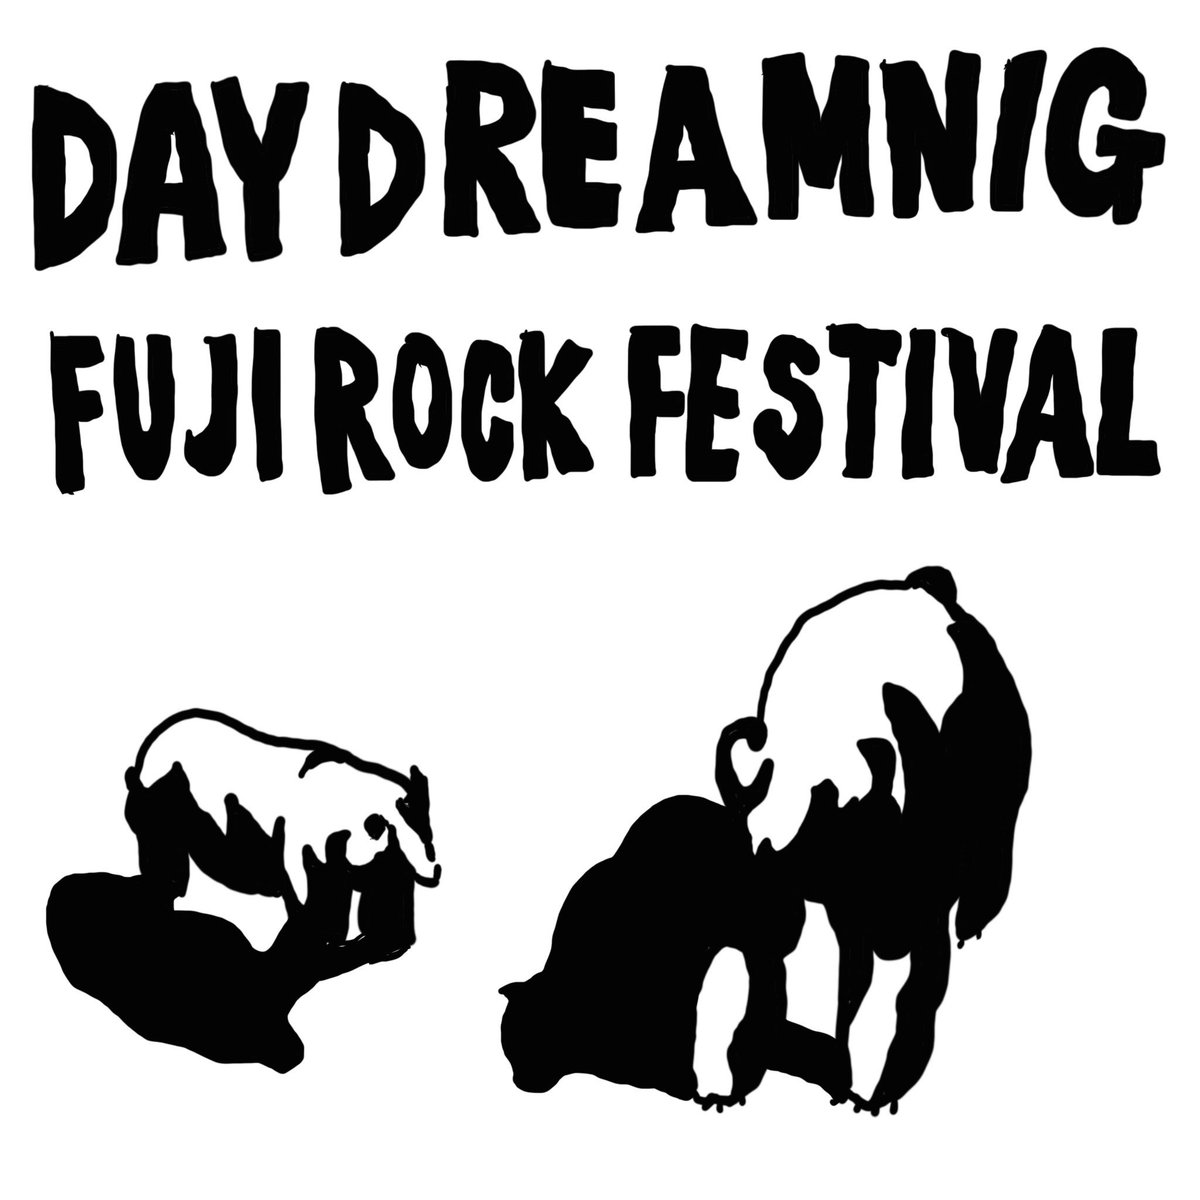 DAY DREAMING Tシャツデザインさせていただきました!(^o^)!
ドラゴンドラ乗った山の頂上だけの限定発売!
#fujirock 